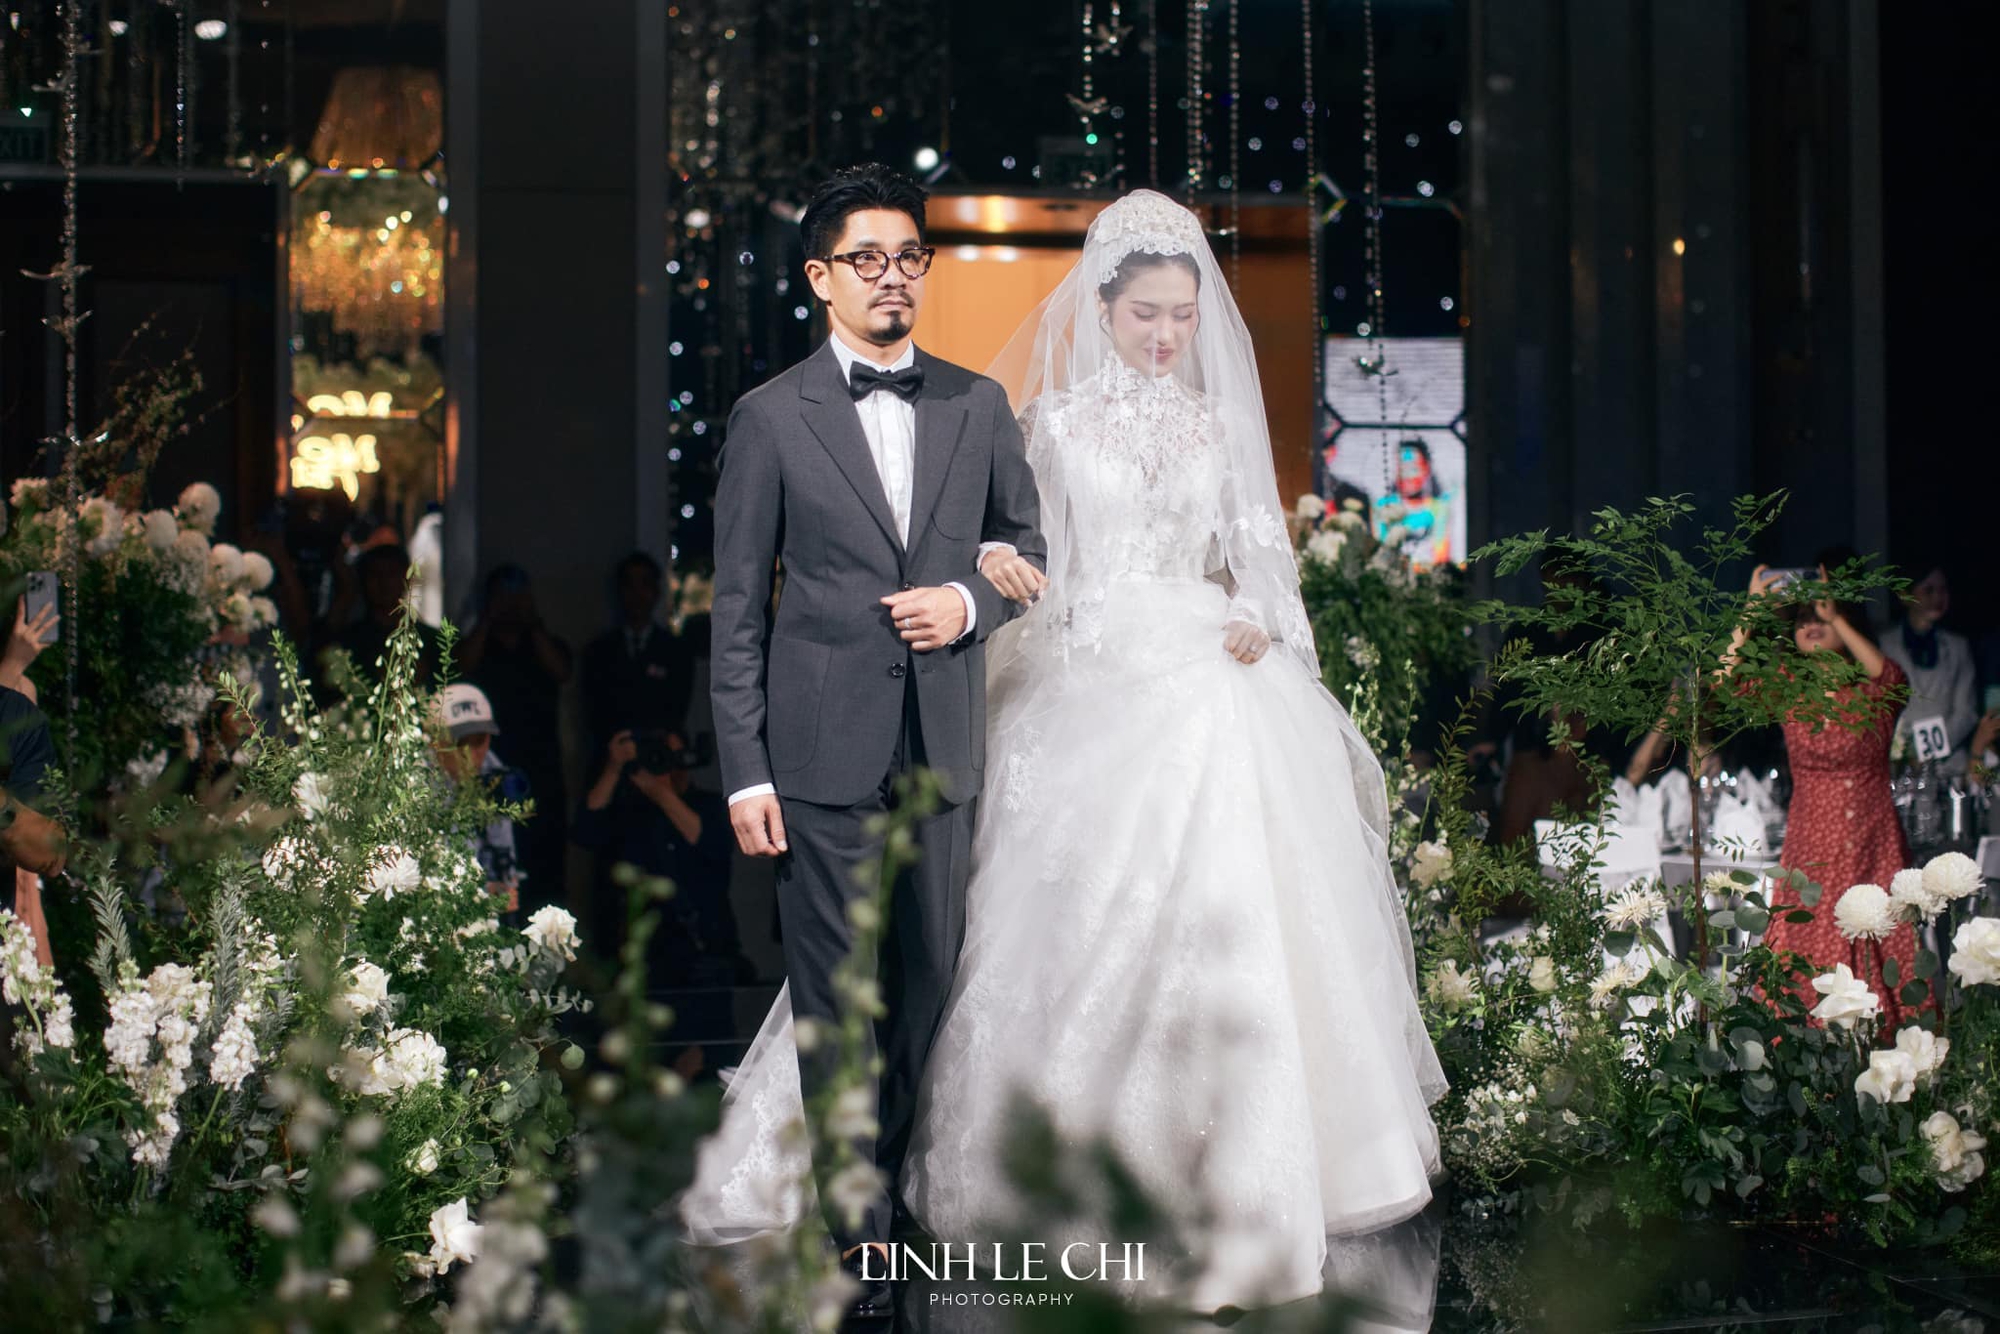 HLV Park Hang-seo và dàn sao dự tiệc cưới Đoàn Văn Hậu - Doãn Hải My - Ảnh 4.